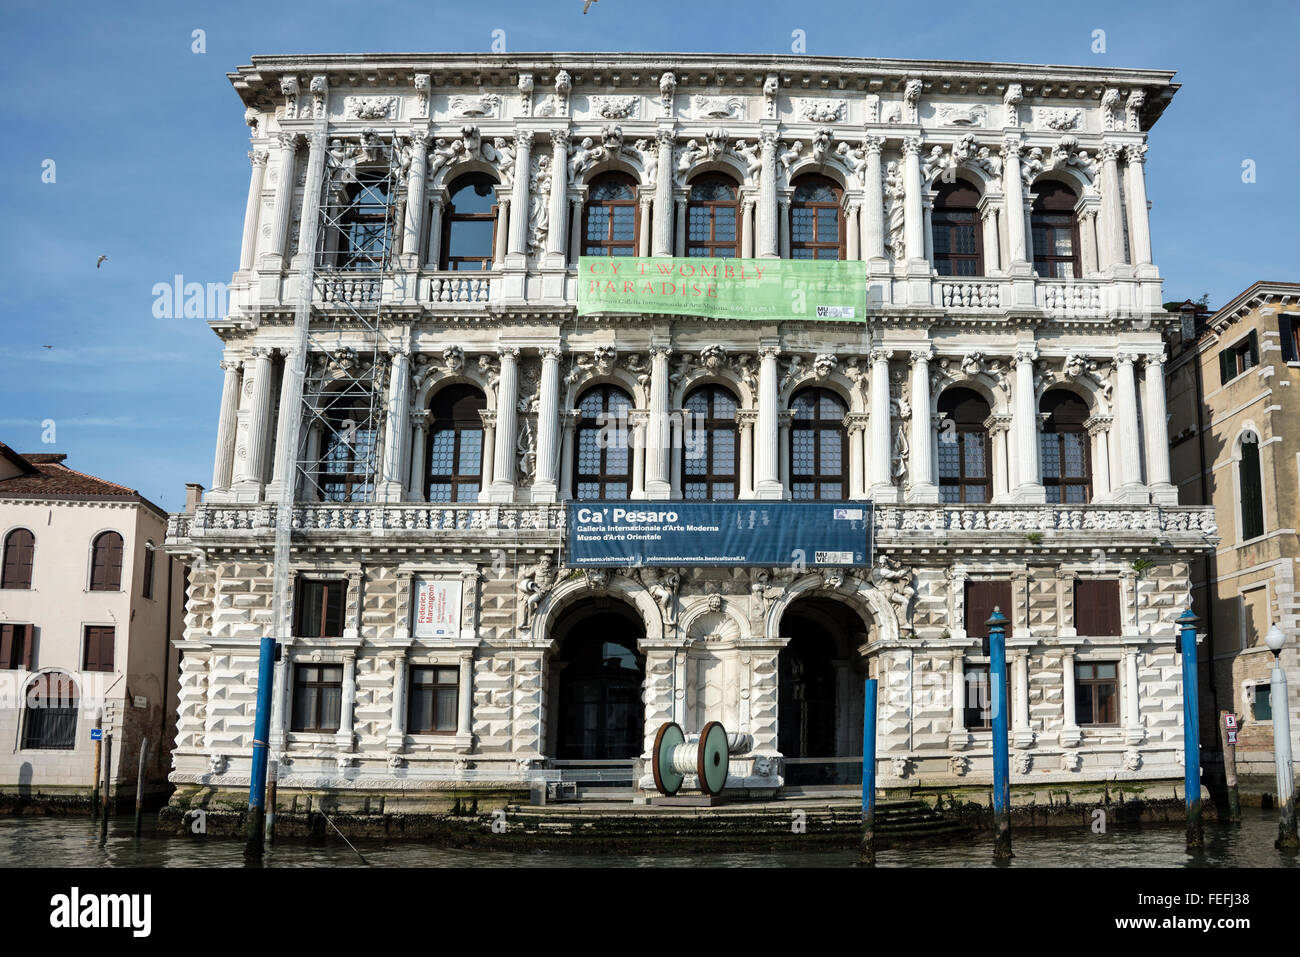 La façade en marbre blanc de Ca Rezzonico art museum dédié à Venise du xviiie siècle sur les rives de la Canale Grande ( Grand Ca Banque D'Images